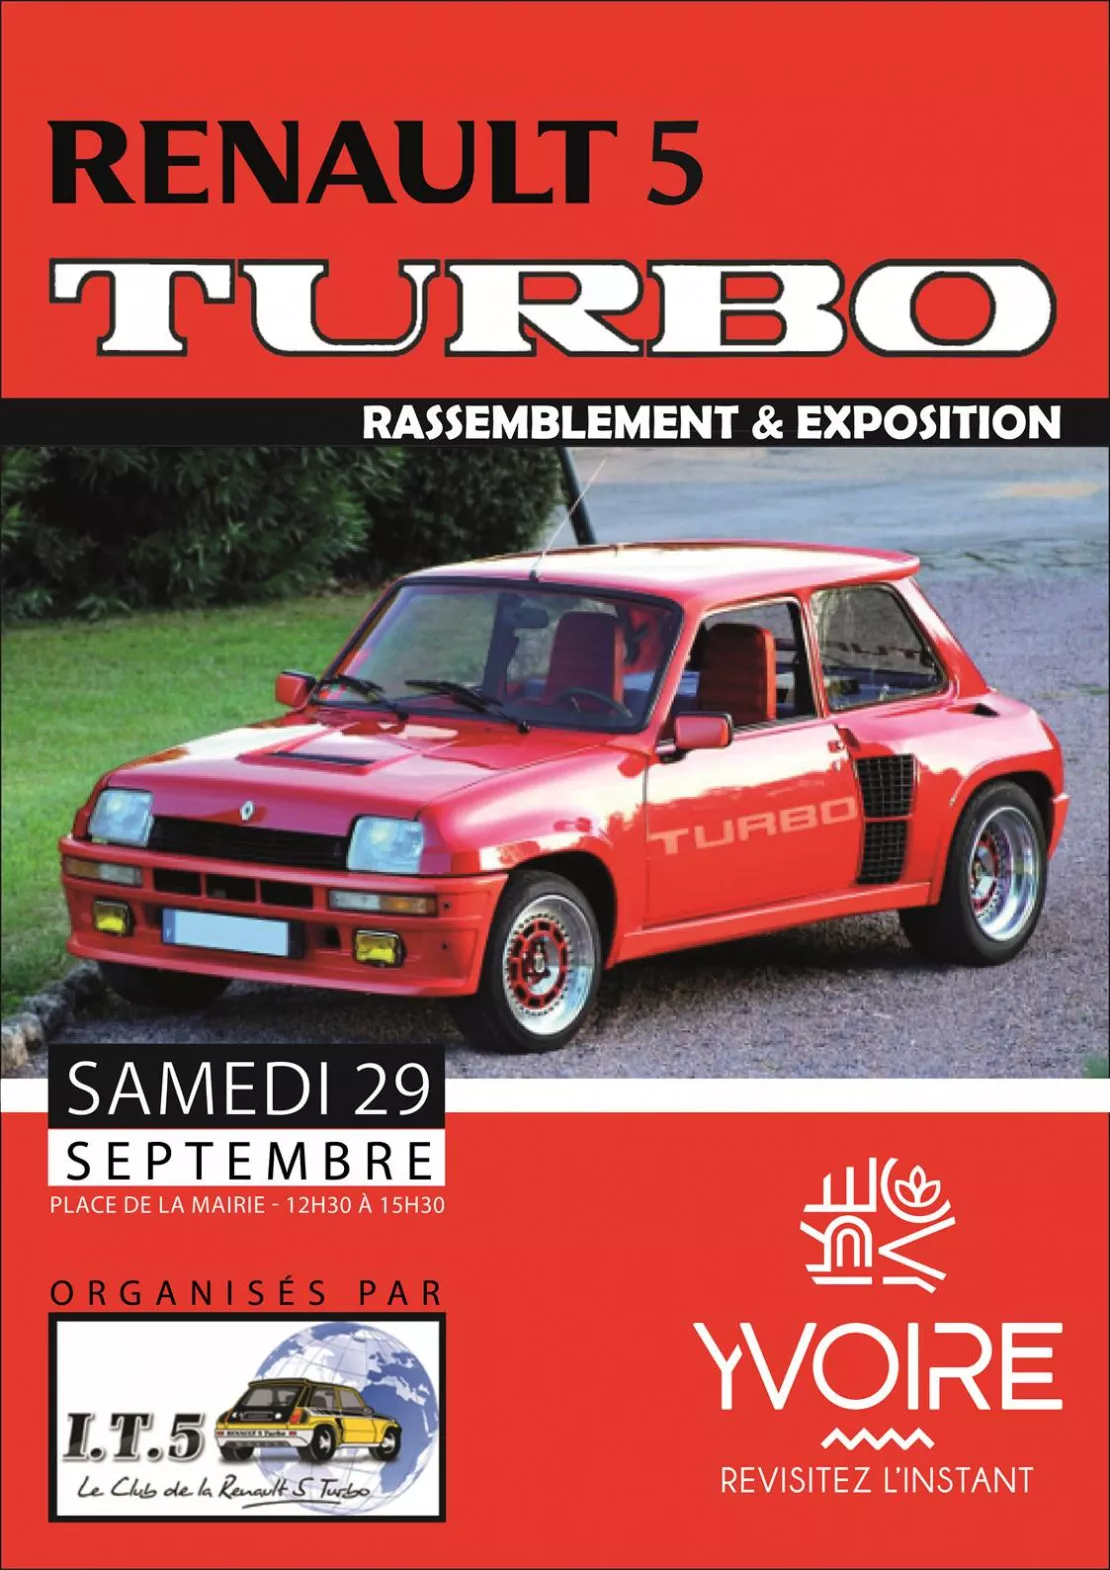 Yvoire - rassemblement et exposition de Renault 5 Turbo